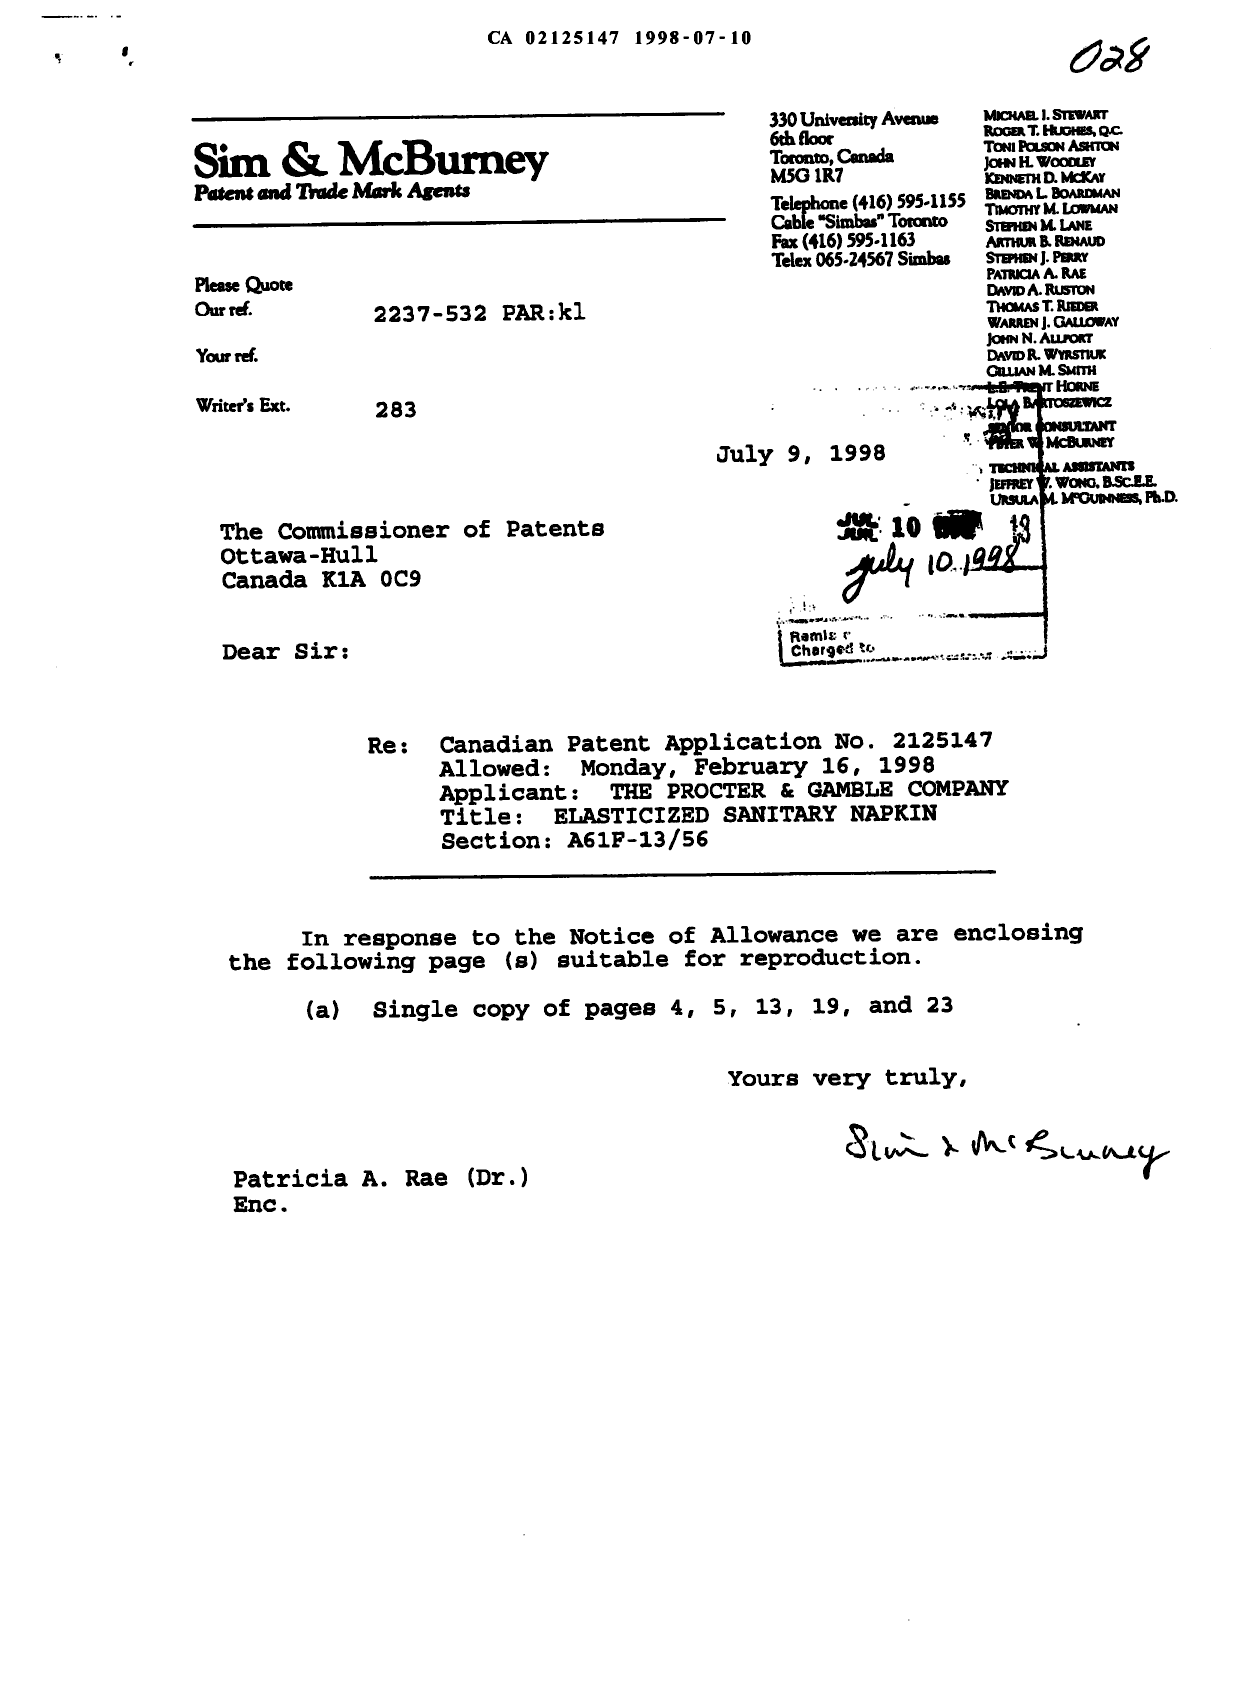 Document de brevet canadien 2125147. Correspondance 19980710. Image 1 de 6